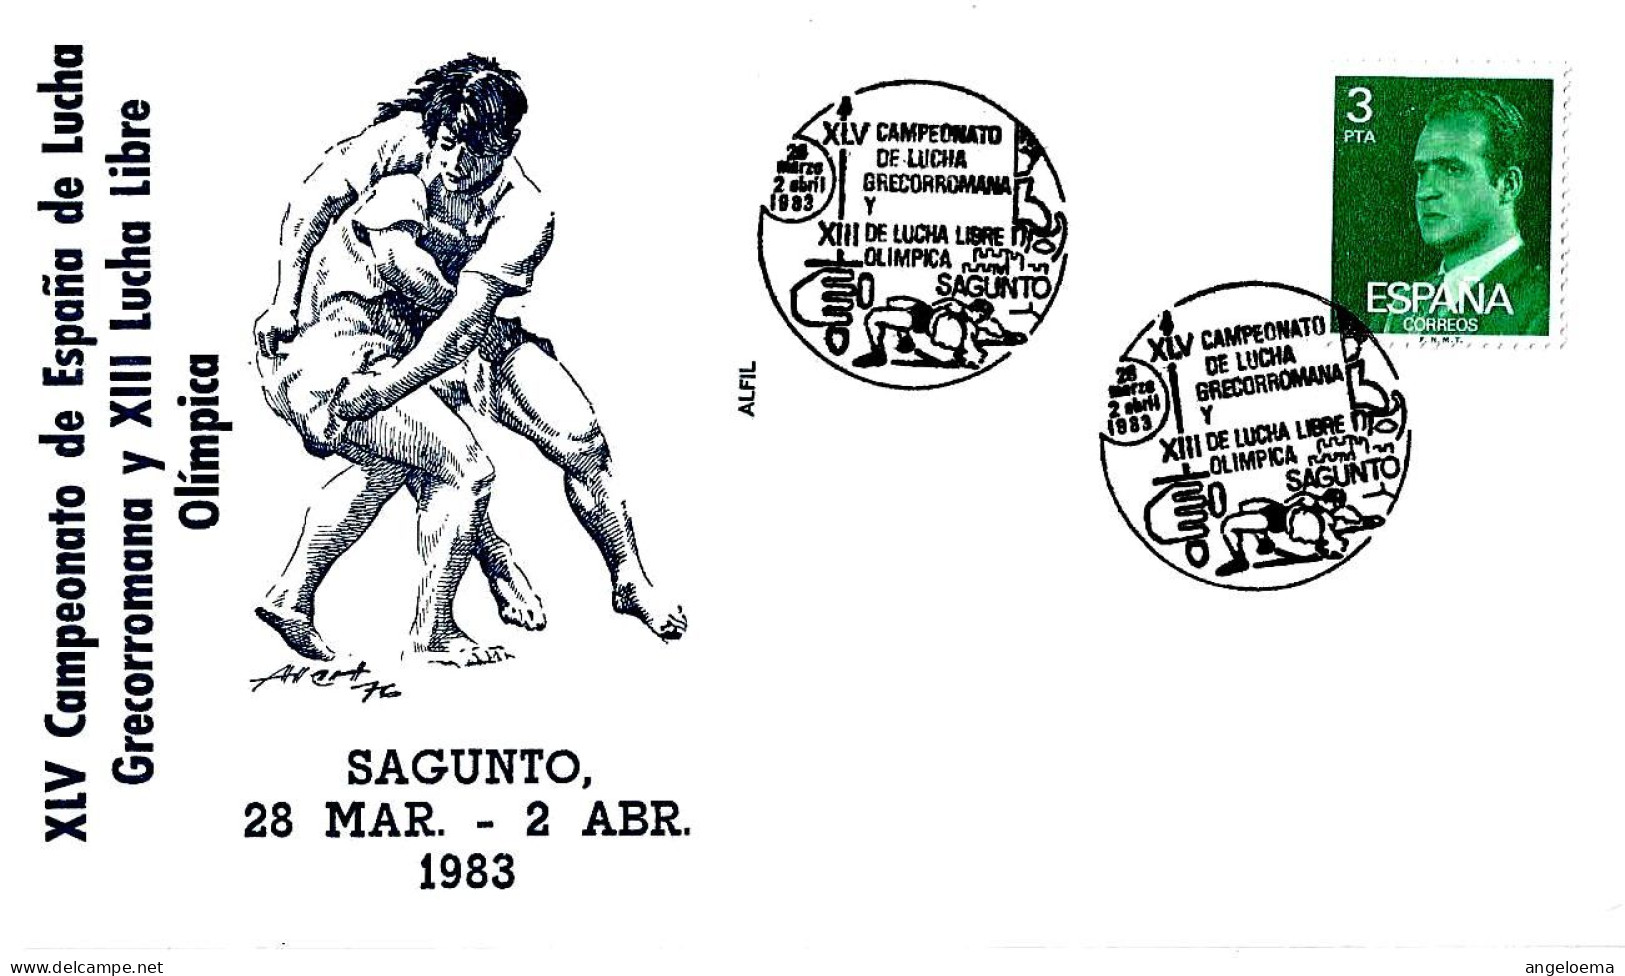 SPAGNA ESPANA - 1983 SAGUNTO XLV Campionati LOTTA GRECOROMANA E XIII Campionati LOTTA LIBERA Su Busta Speciale - 4008 - Wrestling